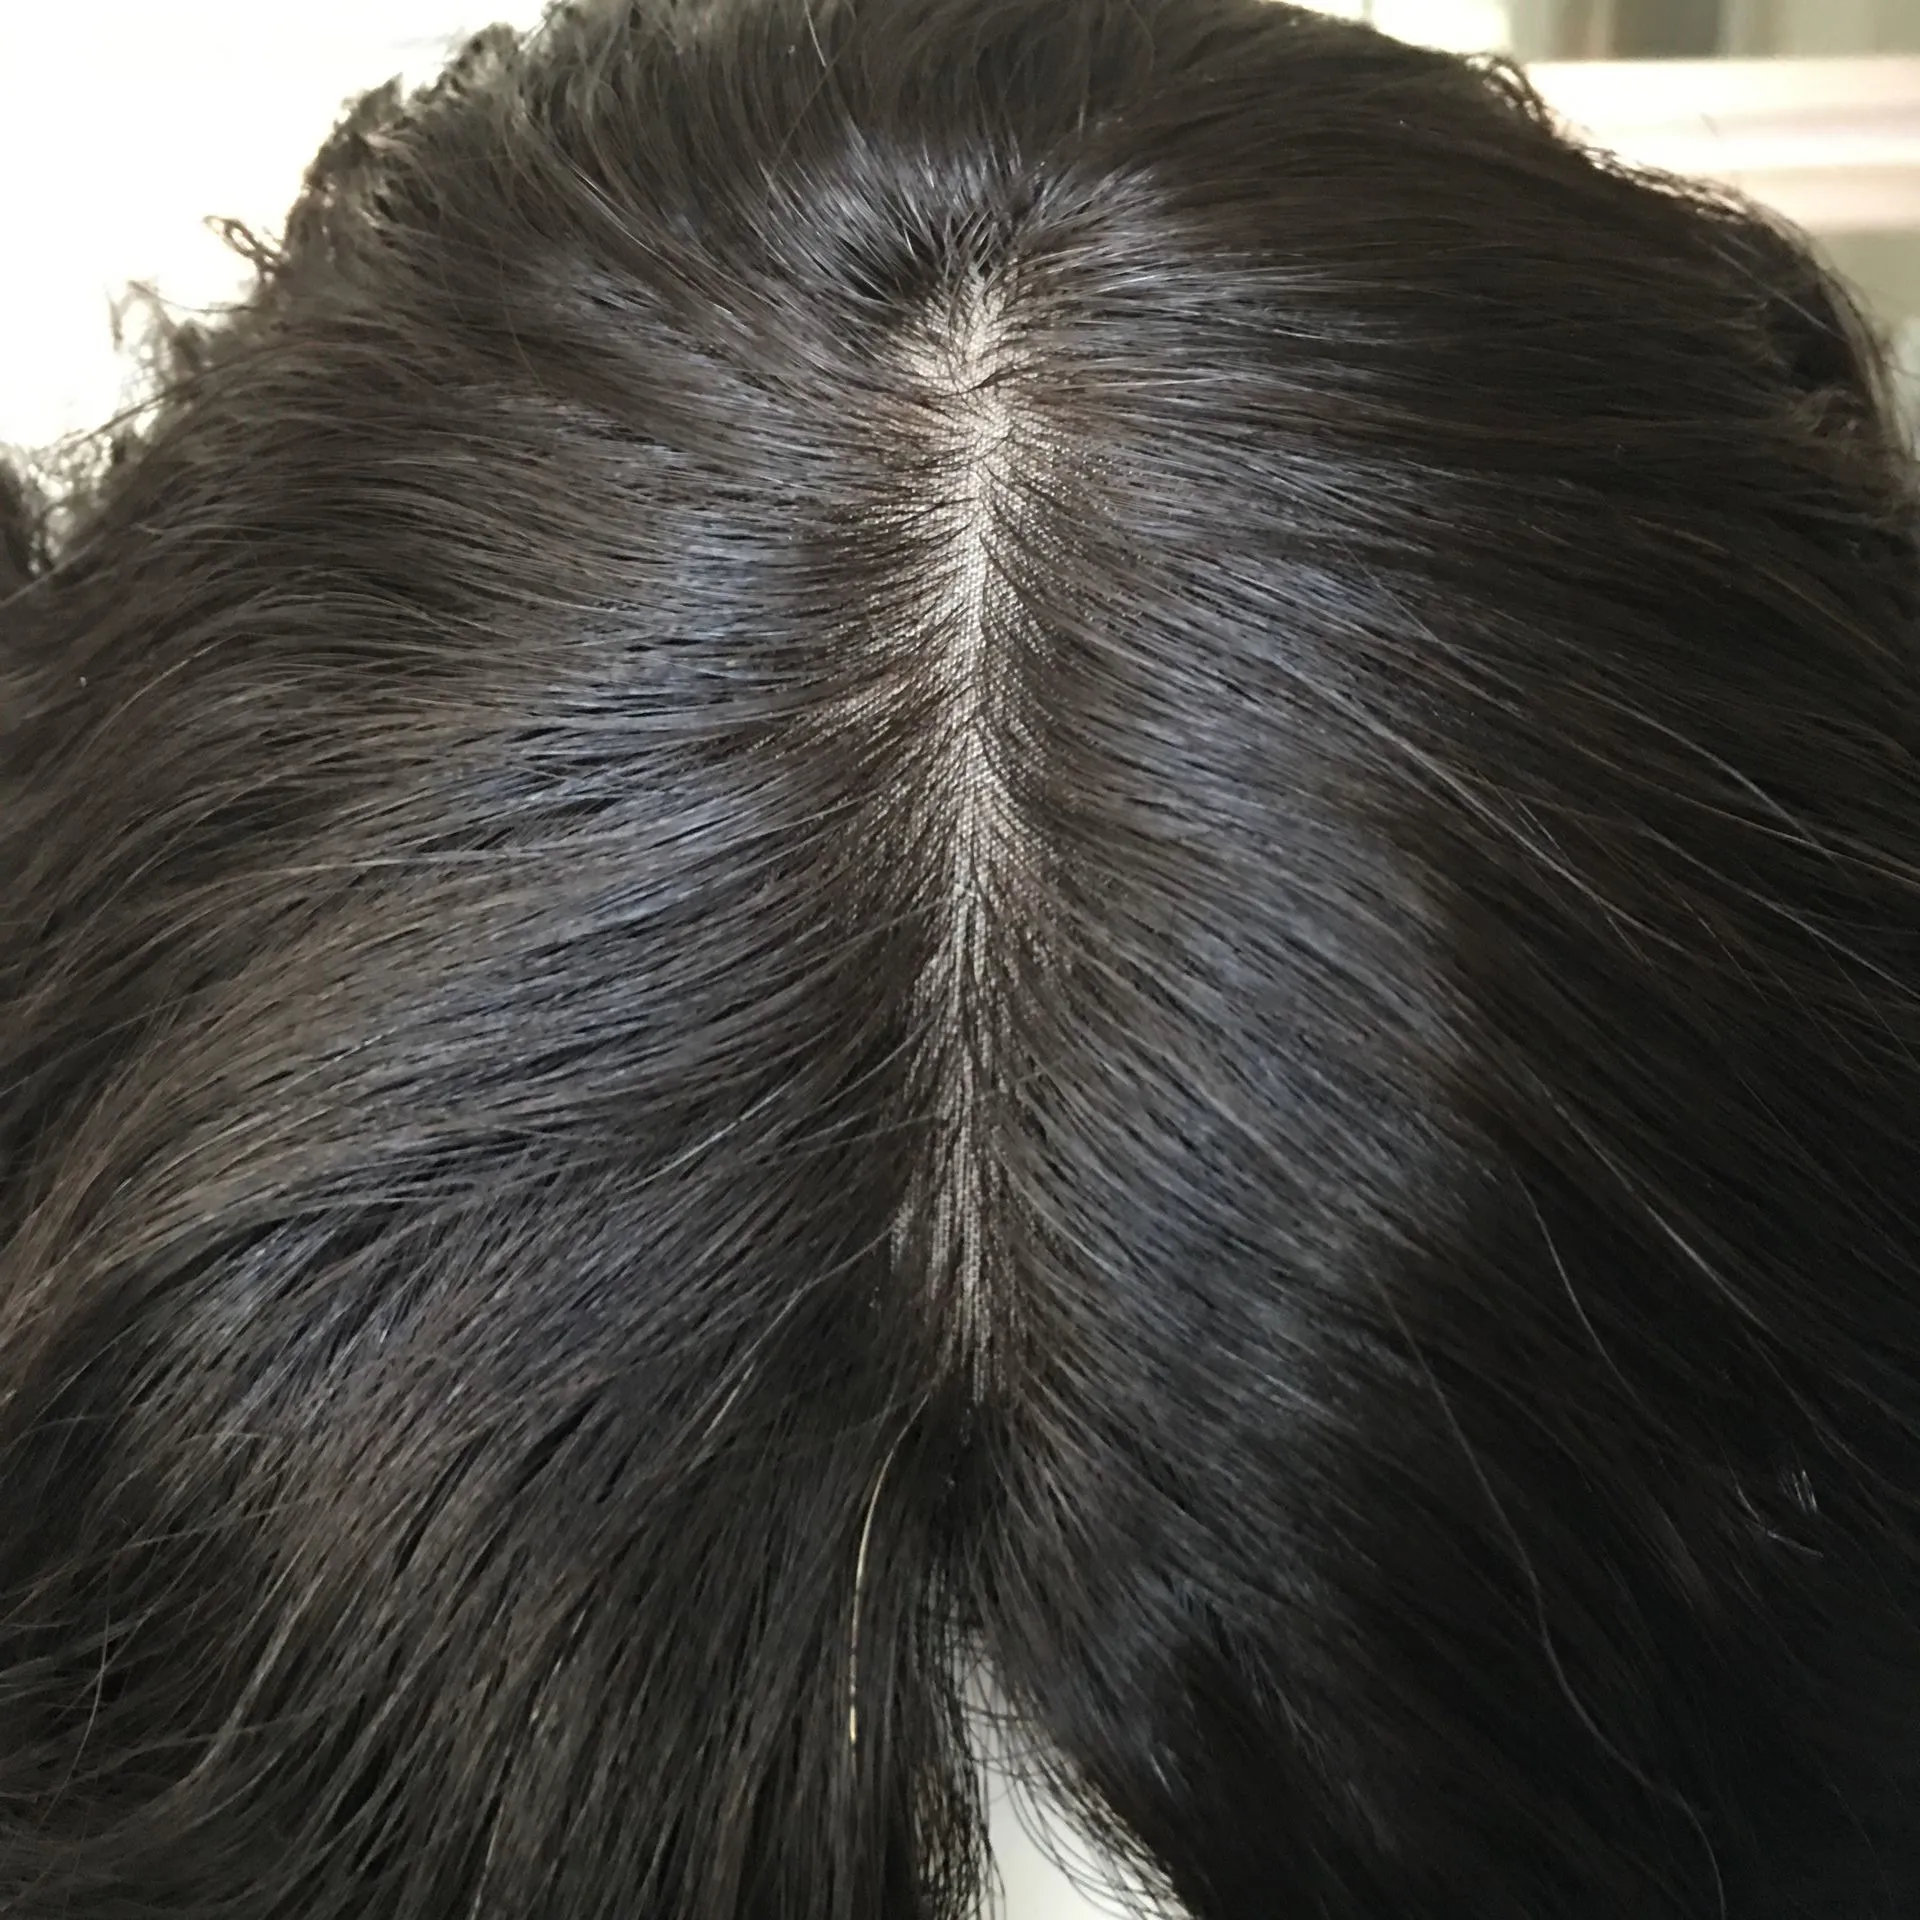 7 дней доставки Tsingtaowigs на заказ европейские необработанные волосы еврейский парик лучшие Sheitels парики